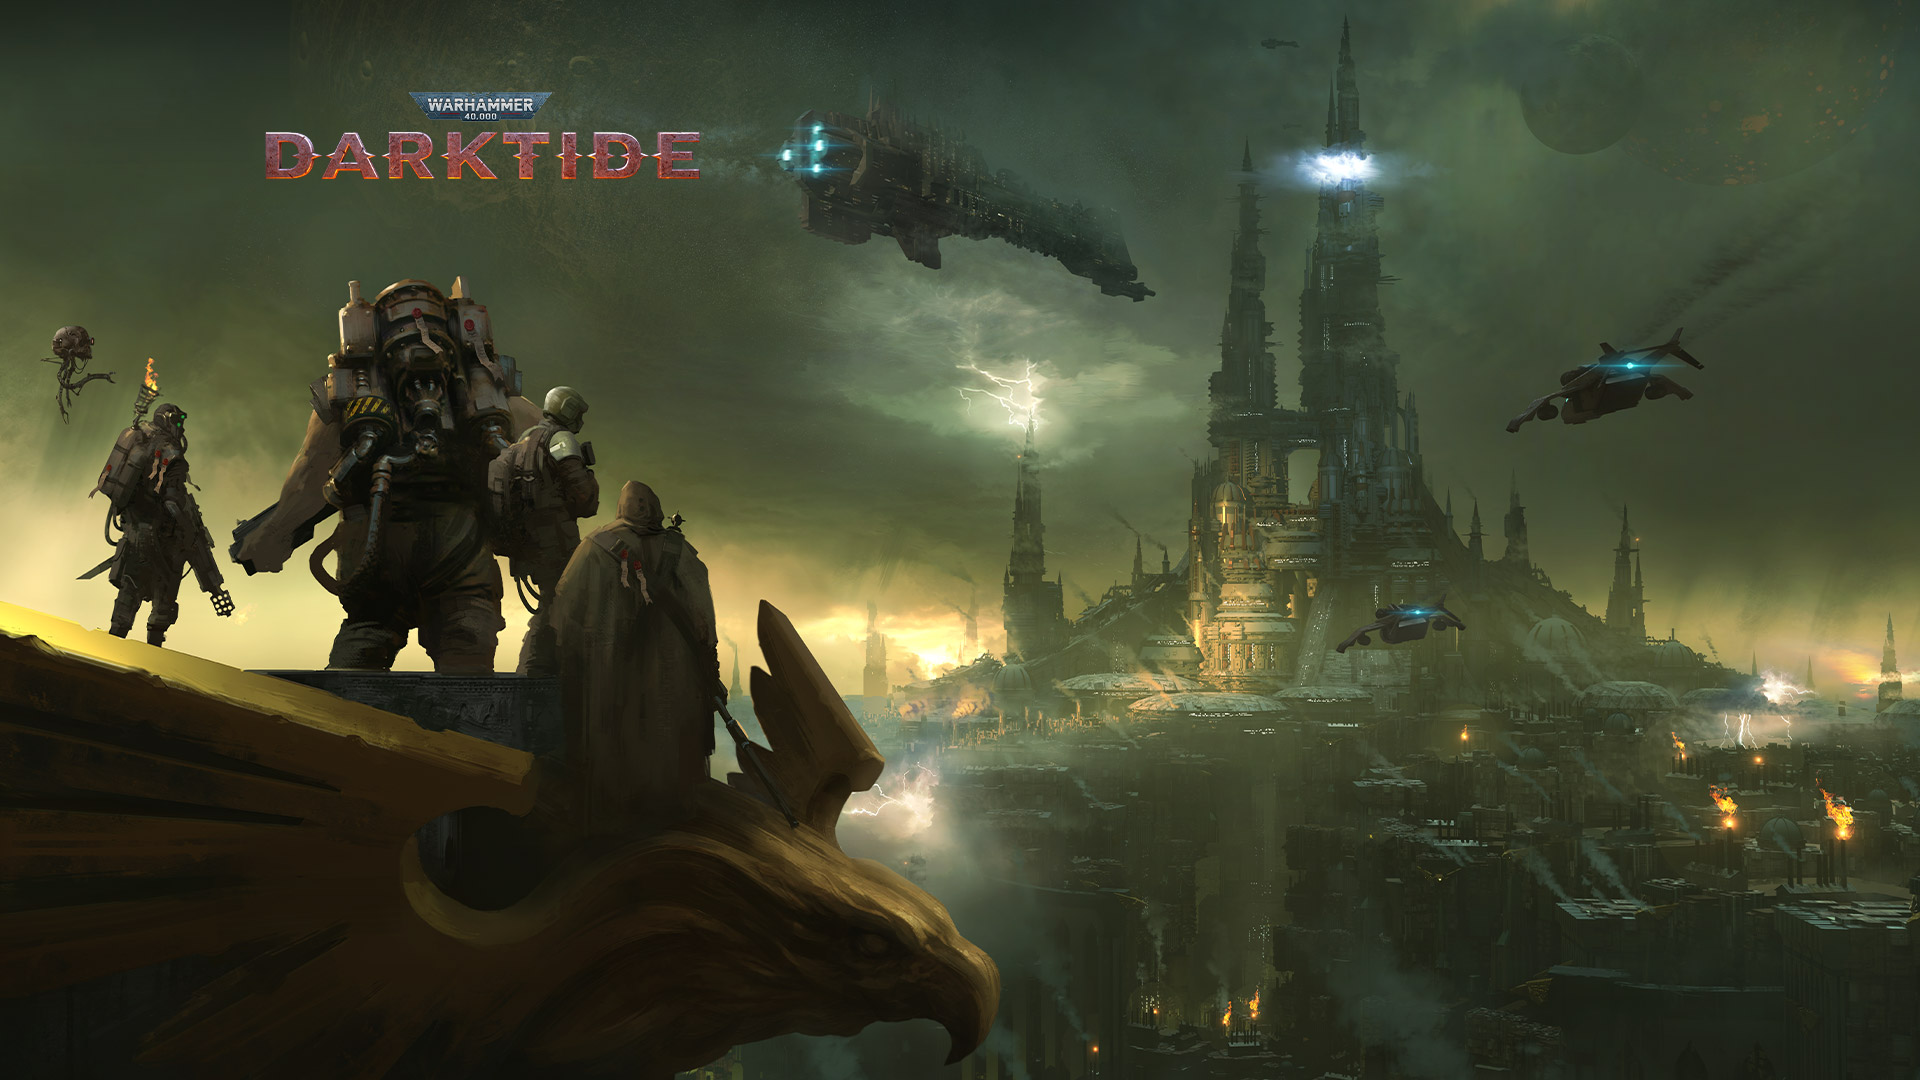 Warhammer 40 000 Darktide, grupa postaci z widokiem na miasto spowite mgłą